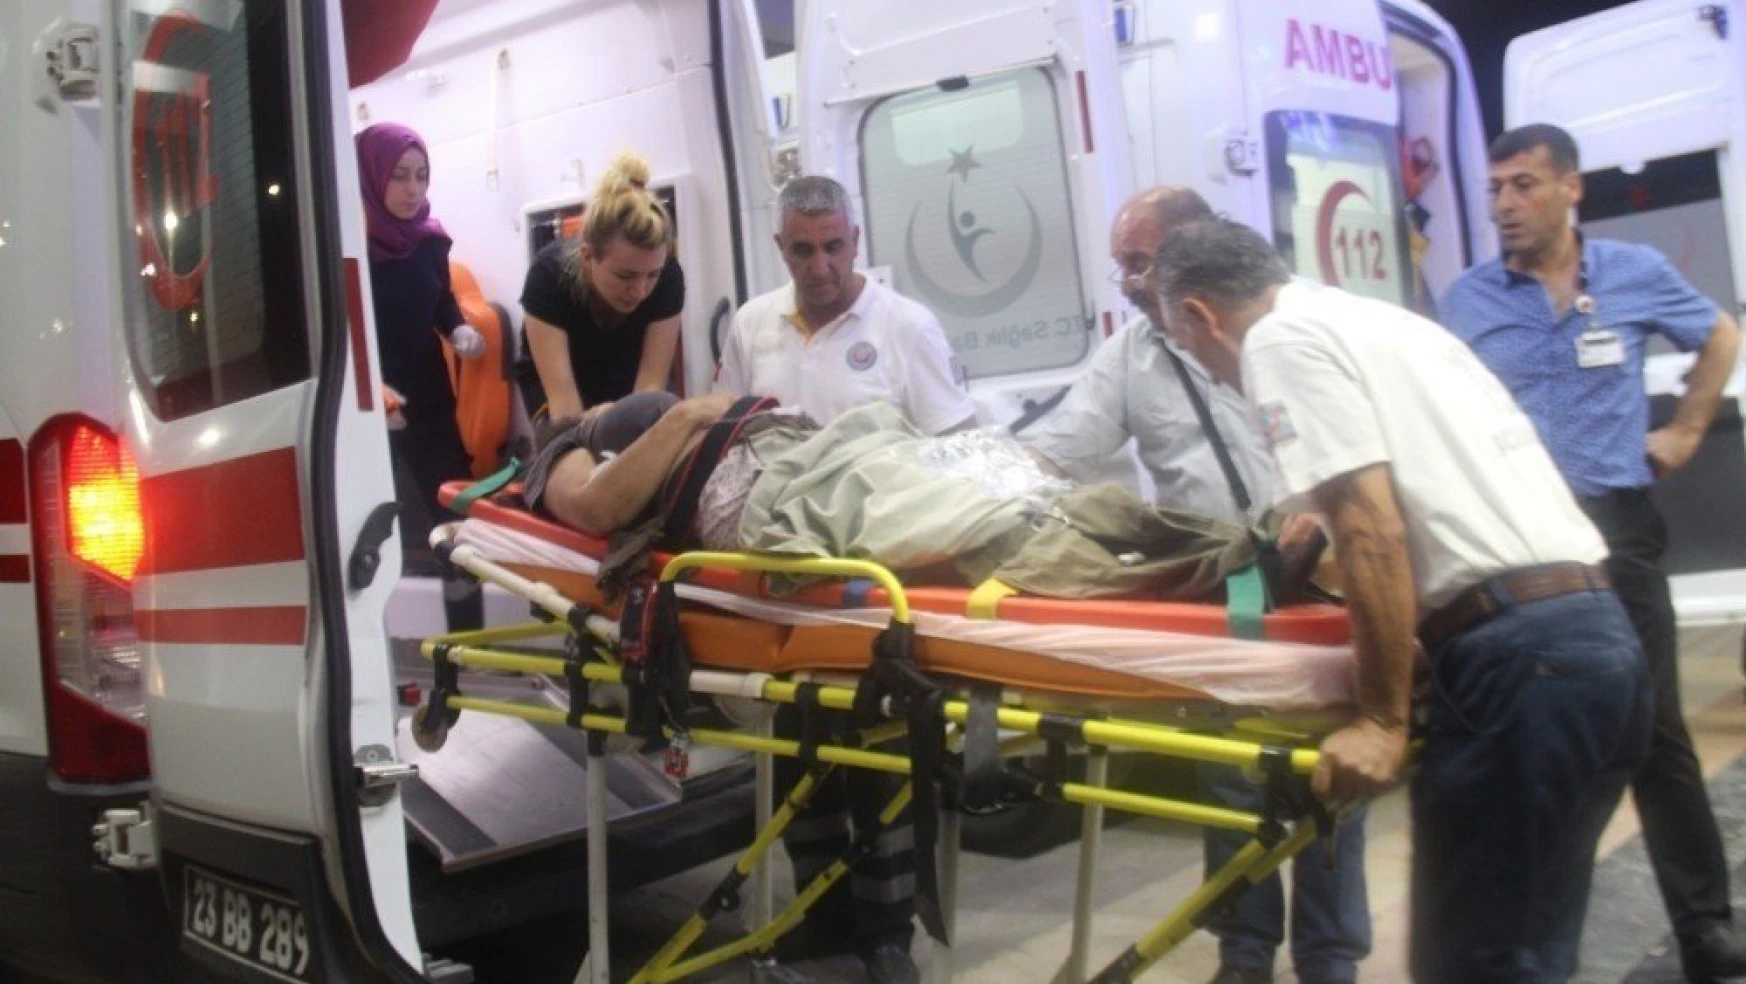 Tunceli'de Mayına Basan Kadın Ağır Yaralandı